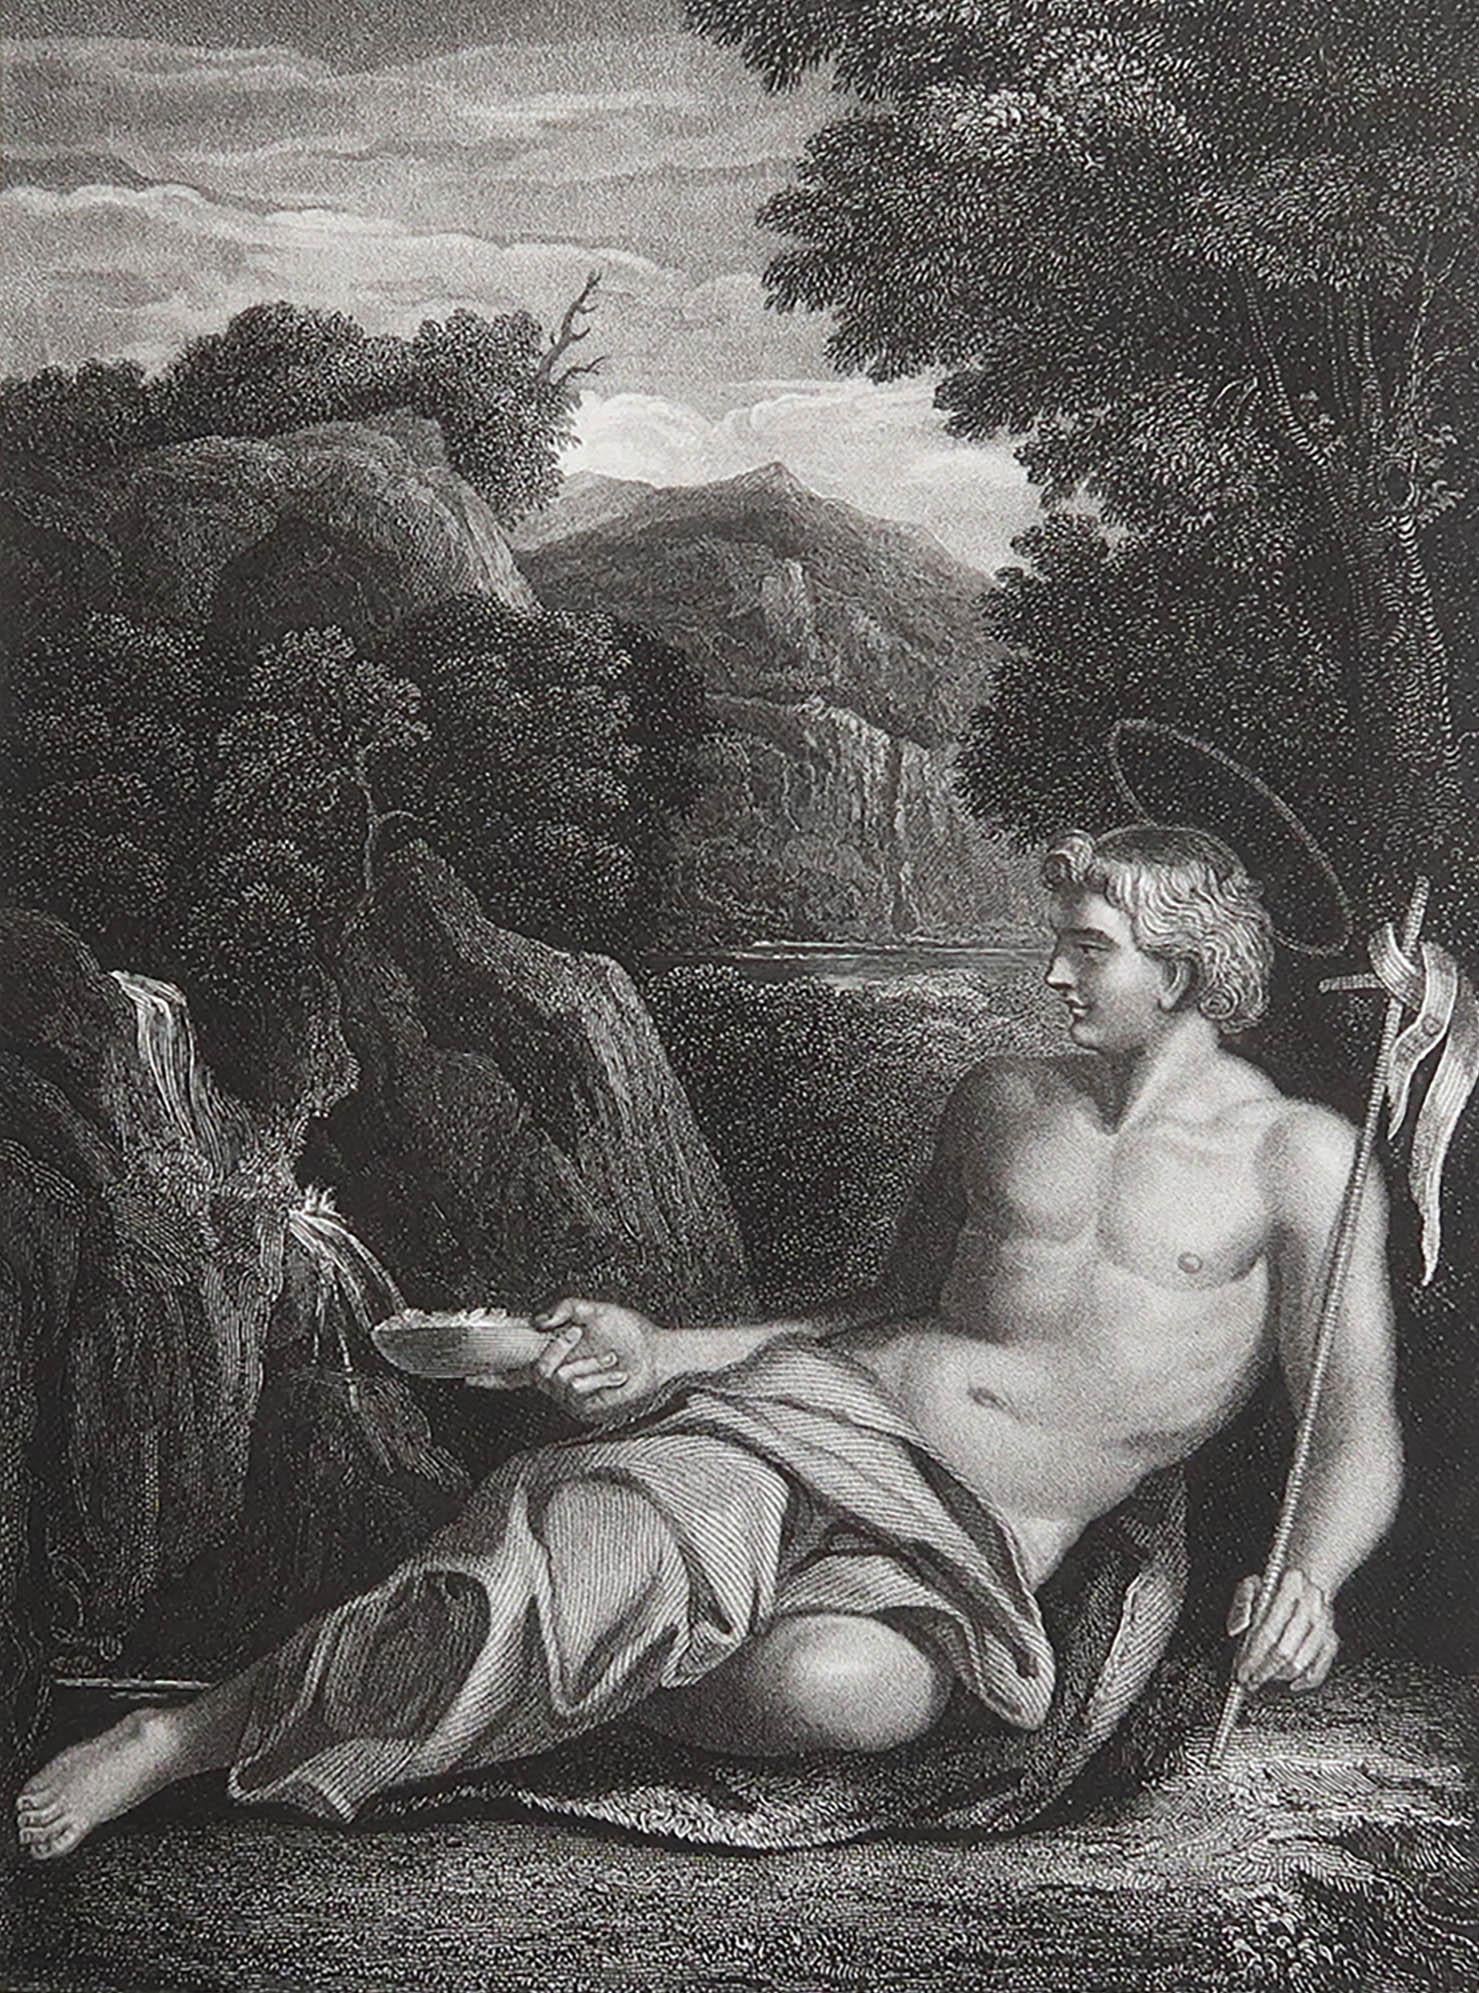 Magnifique image d'après Carracci

Gravure en acier fin. 

Publié par Jones & Co. C.1850

Non encadré.

